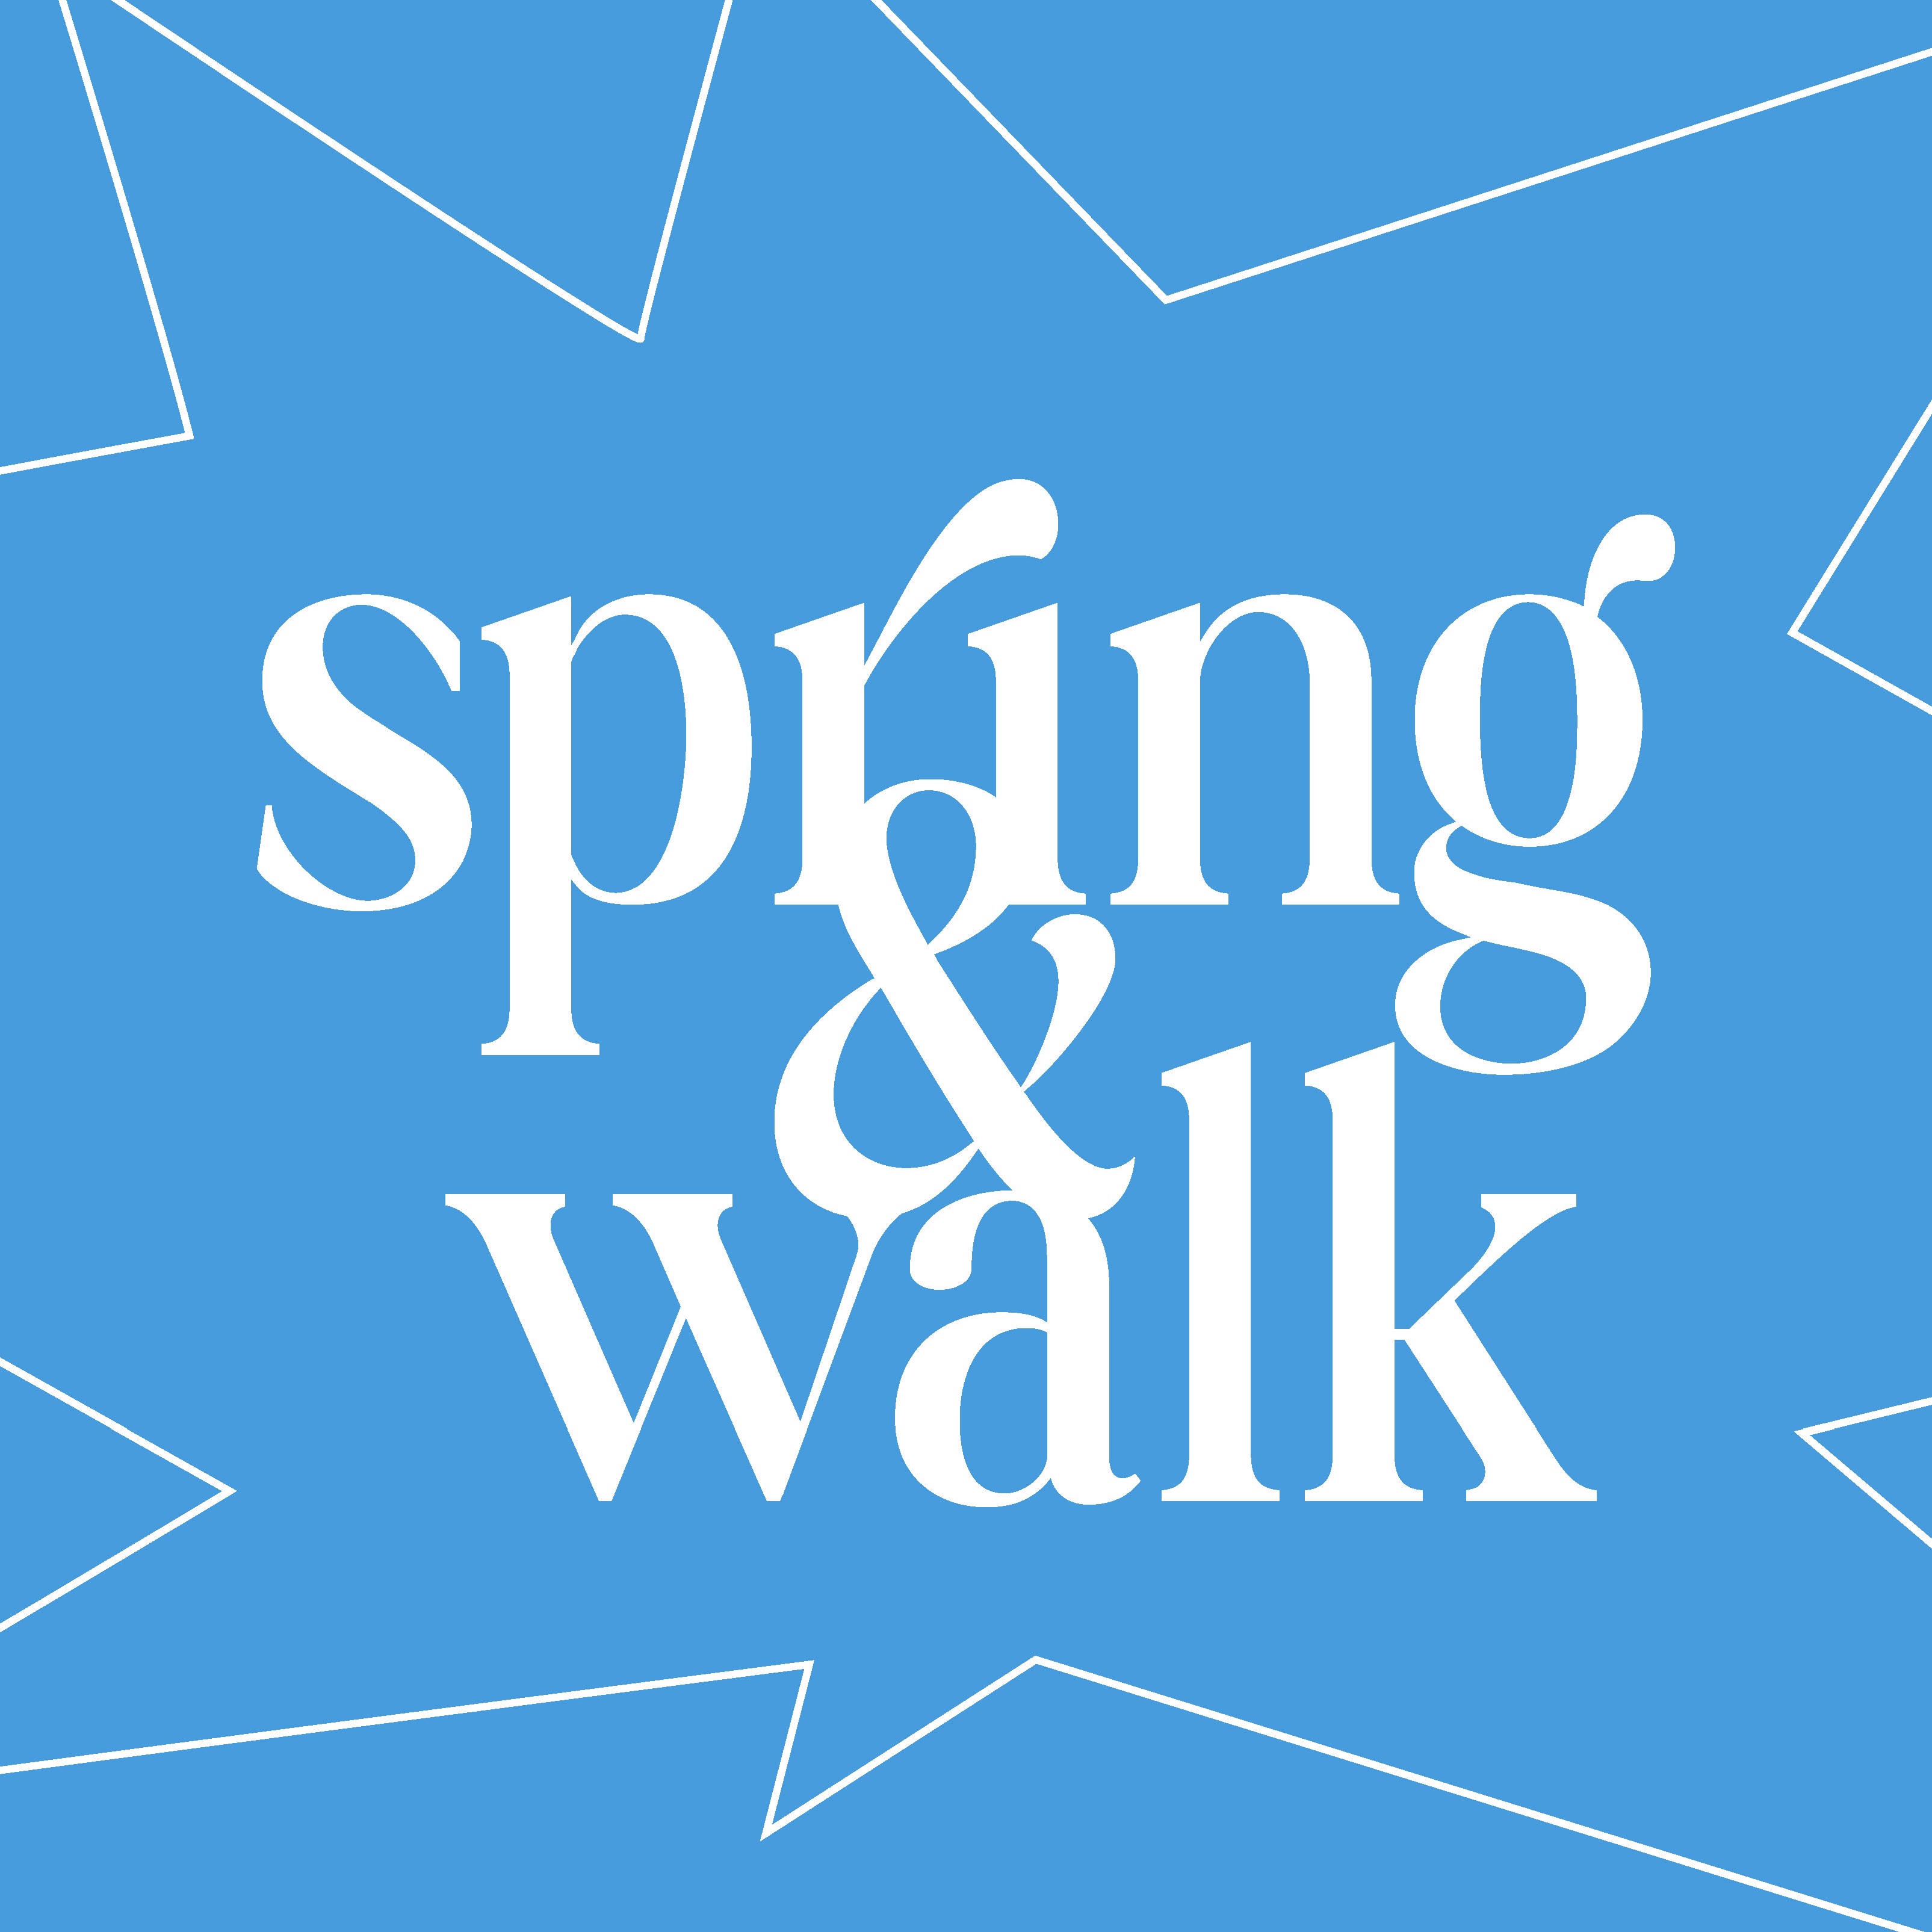 Spring & Walk am Samstag, den 22. April 2023 von 12 bis 18 Uhr